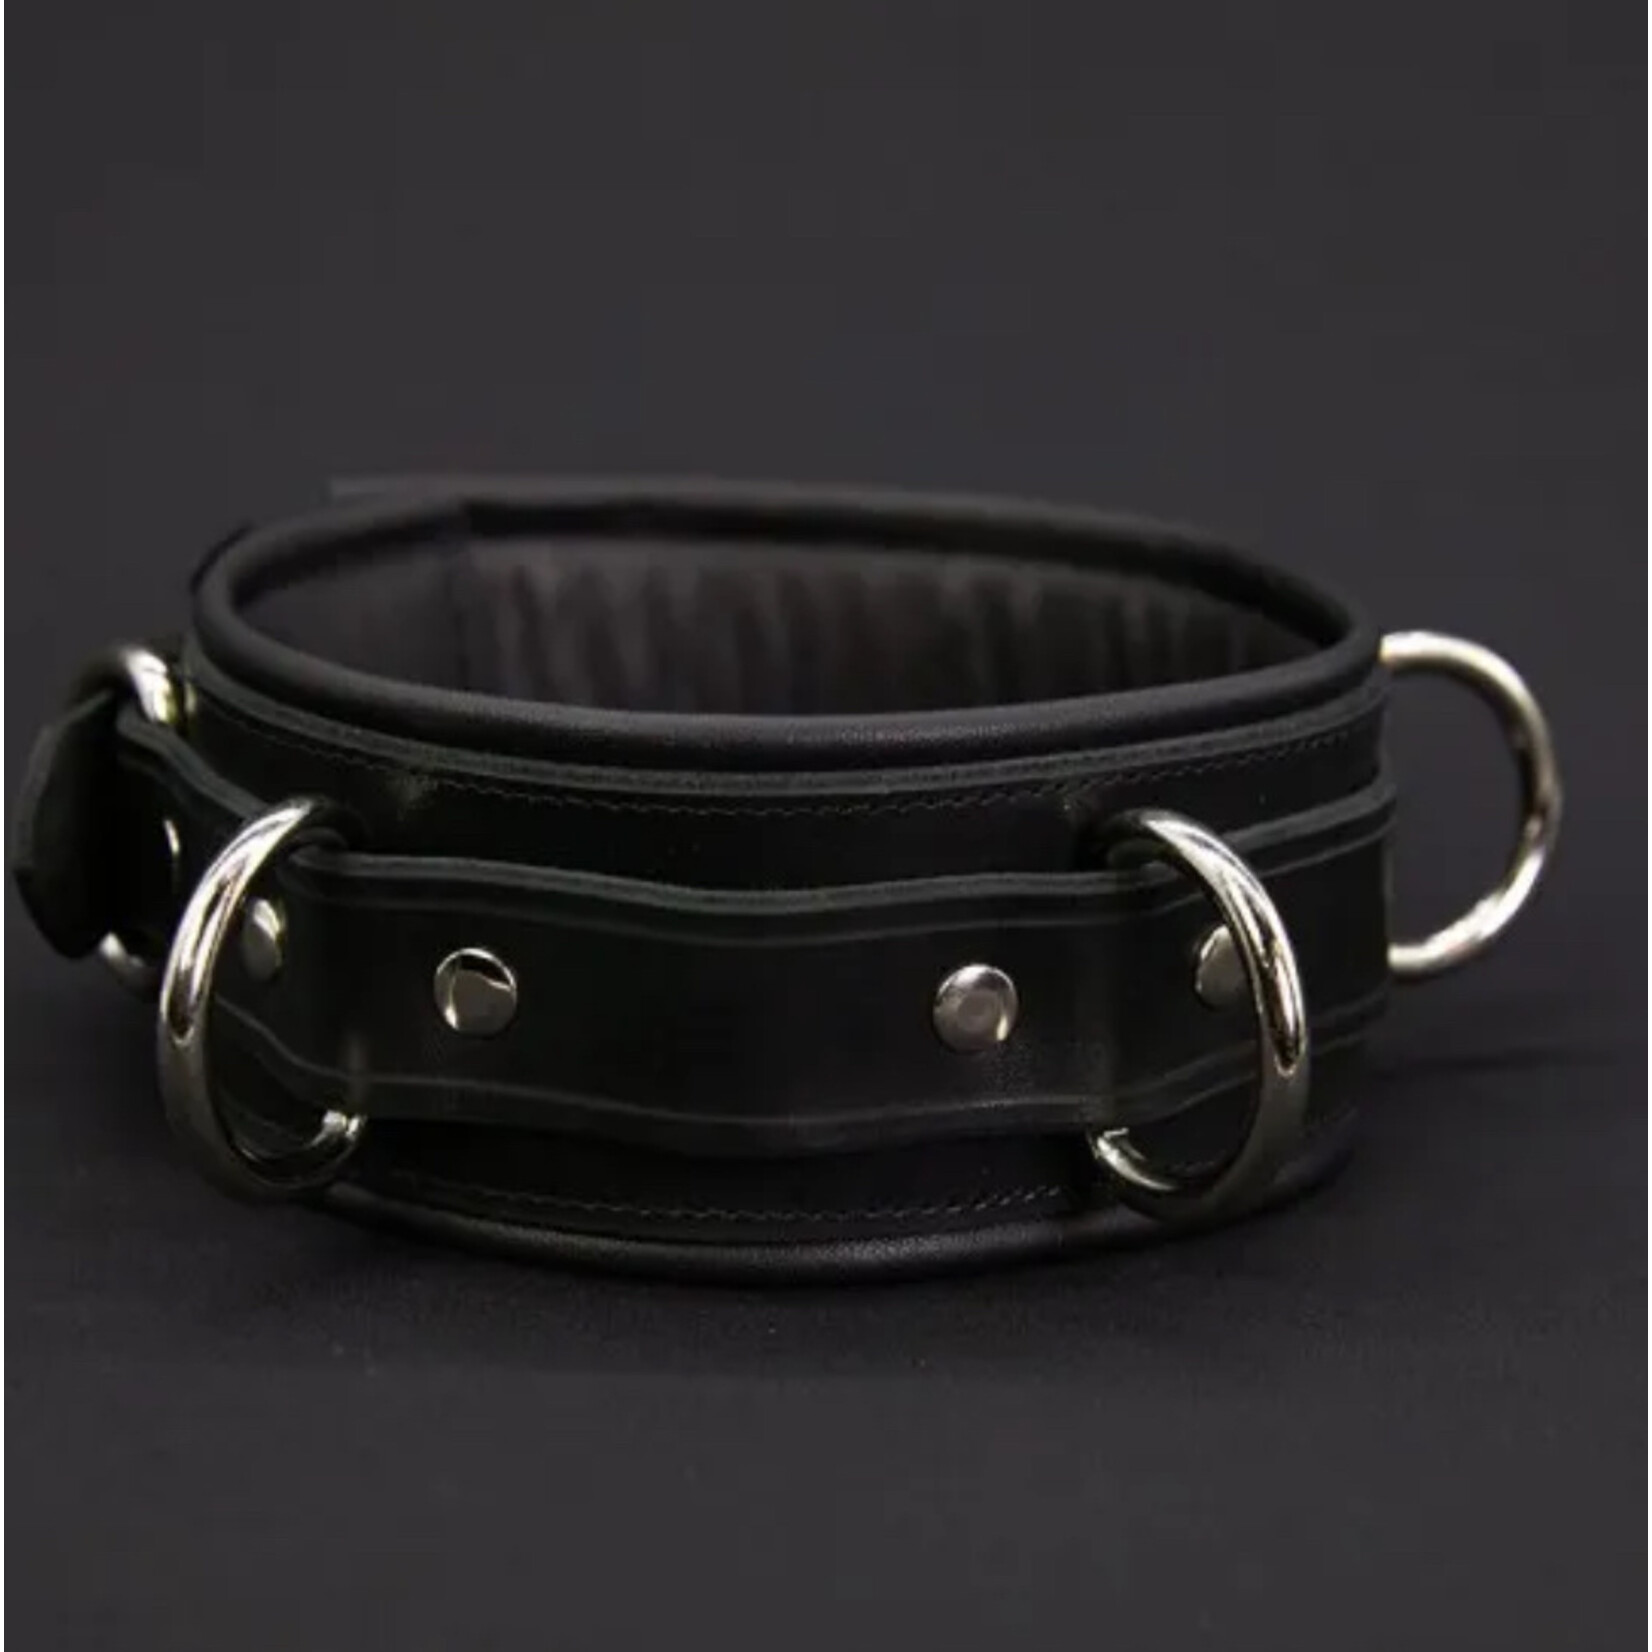 Mr. S Leather Mr. S Leather - Fetters Locking Bondage Collar - Black -Med